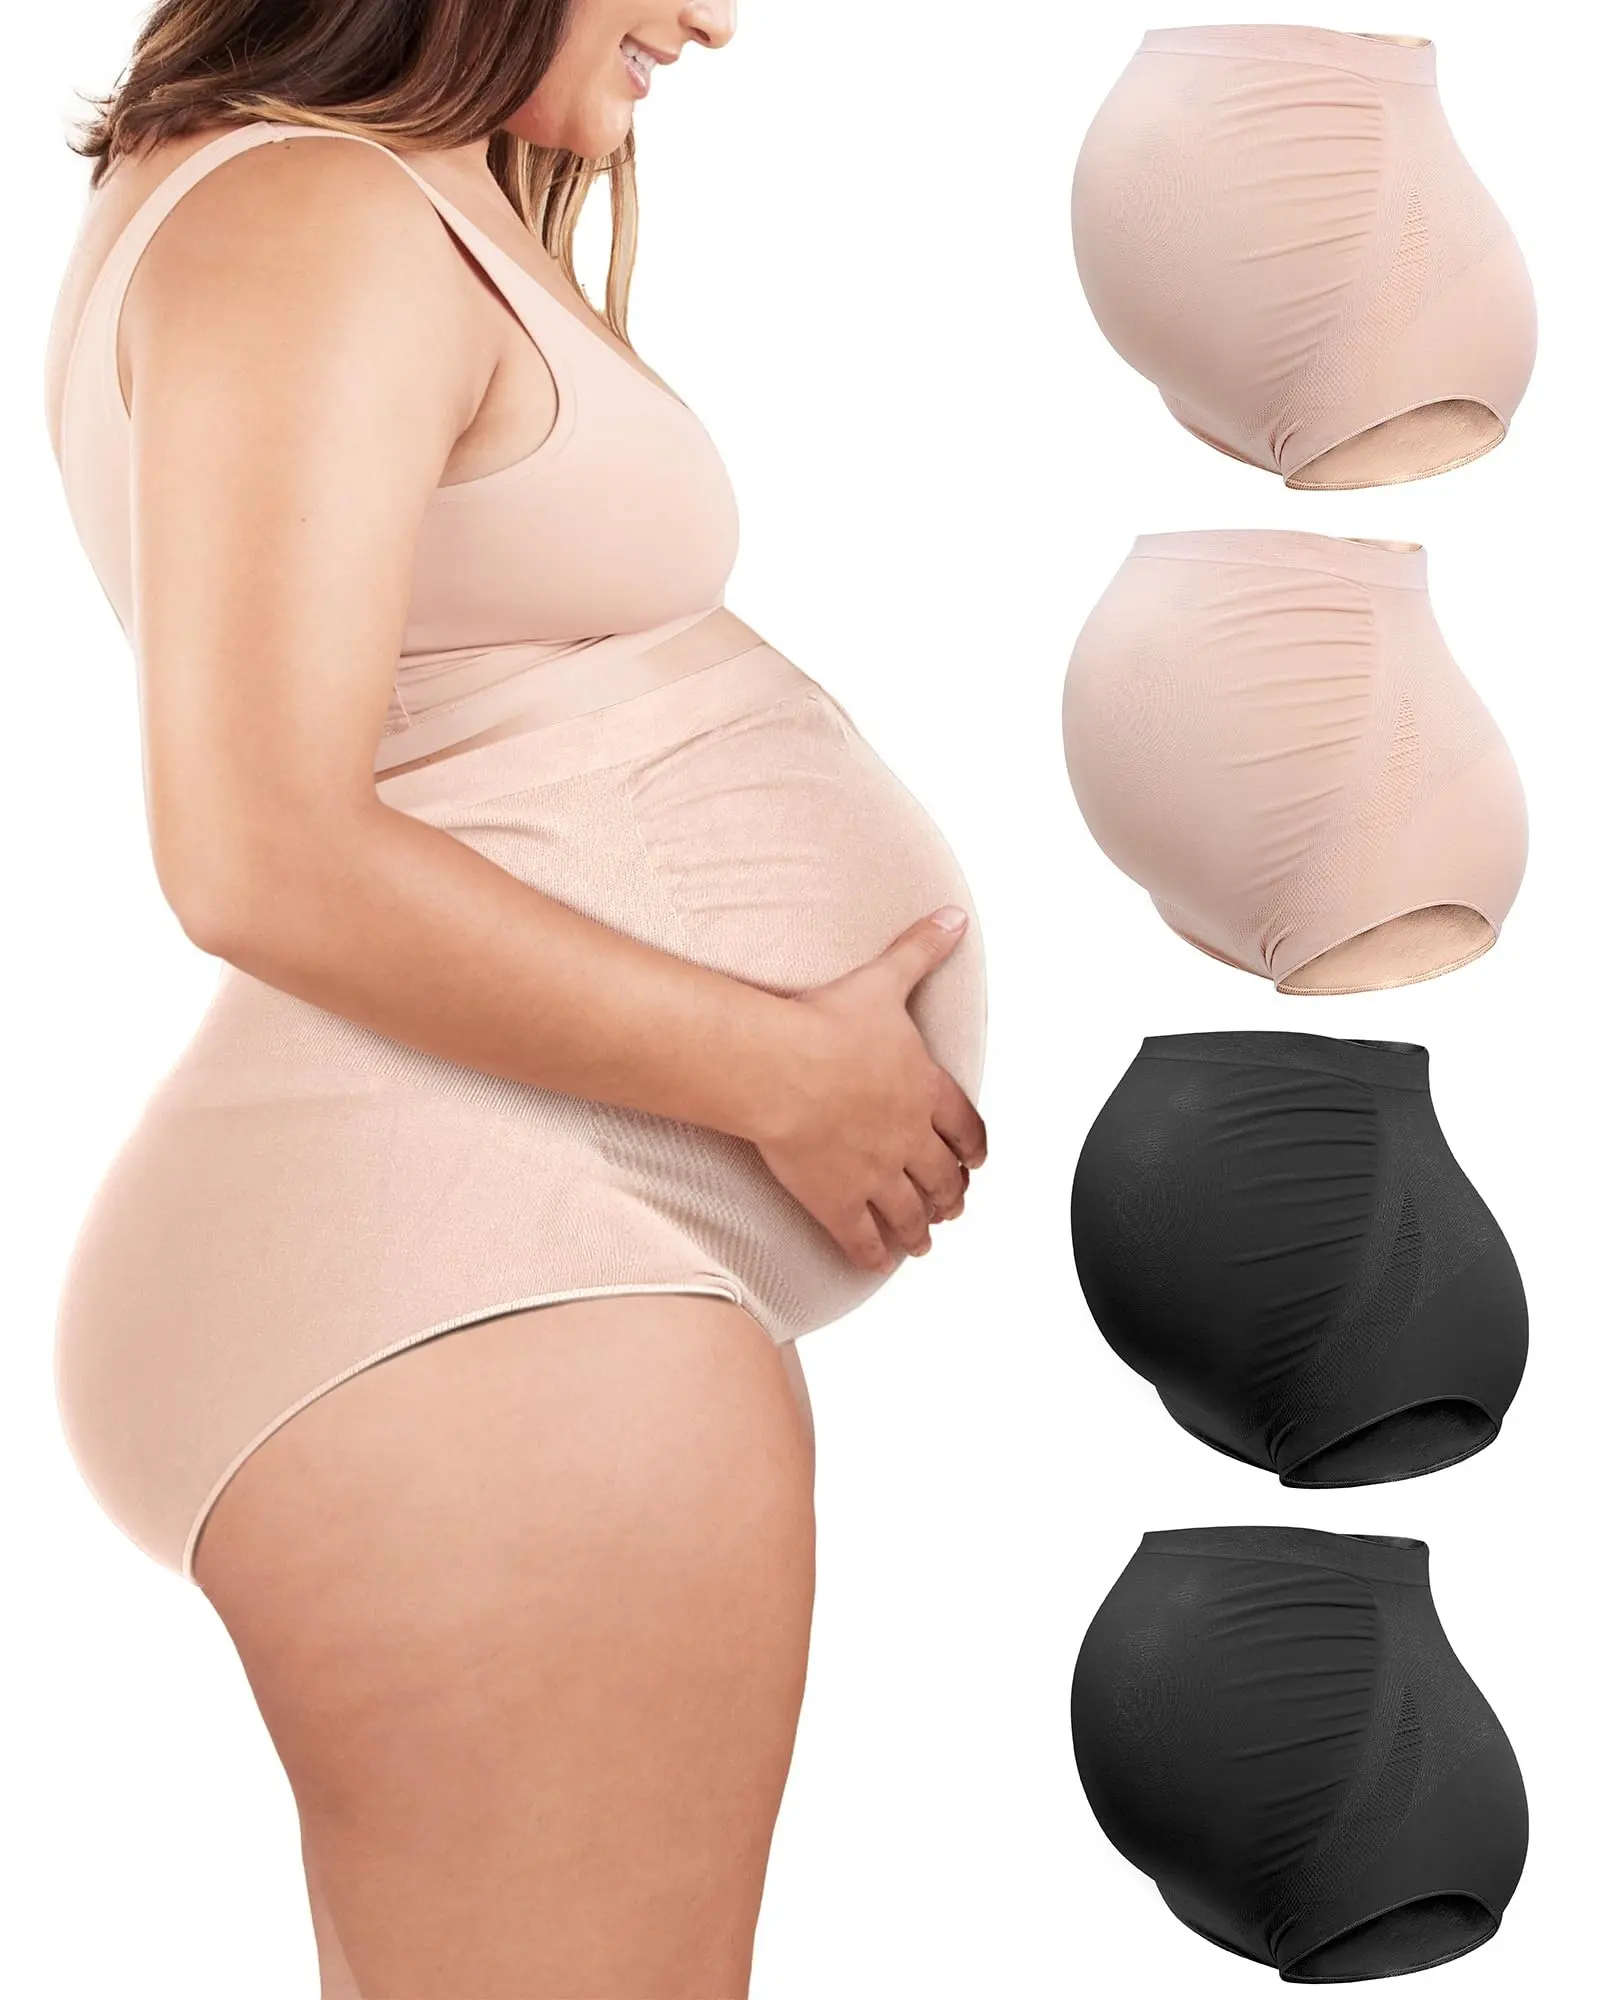 Mutterschaftsunterwäsche Formkleidung Über Beulen Übergröße nahtlose Unterstützung hohe Taille Mutterschaftshöschen